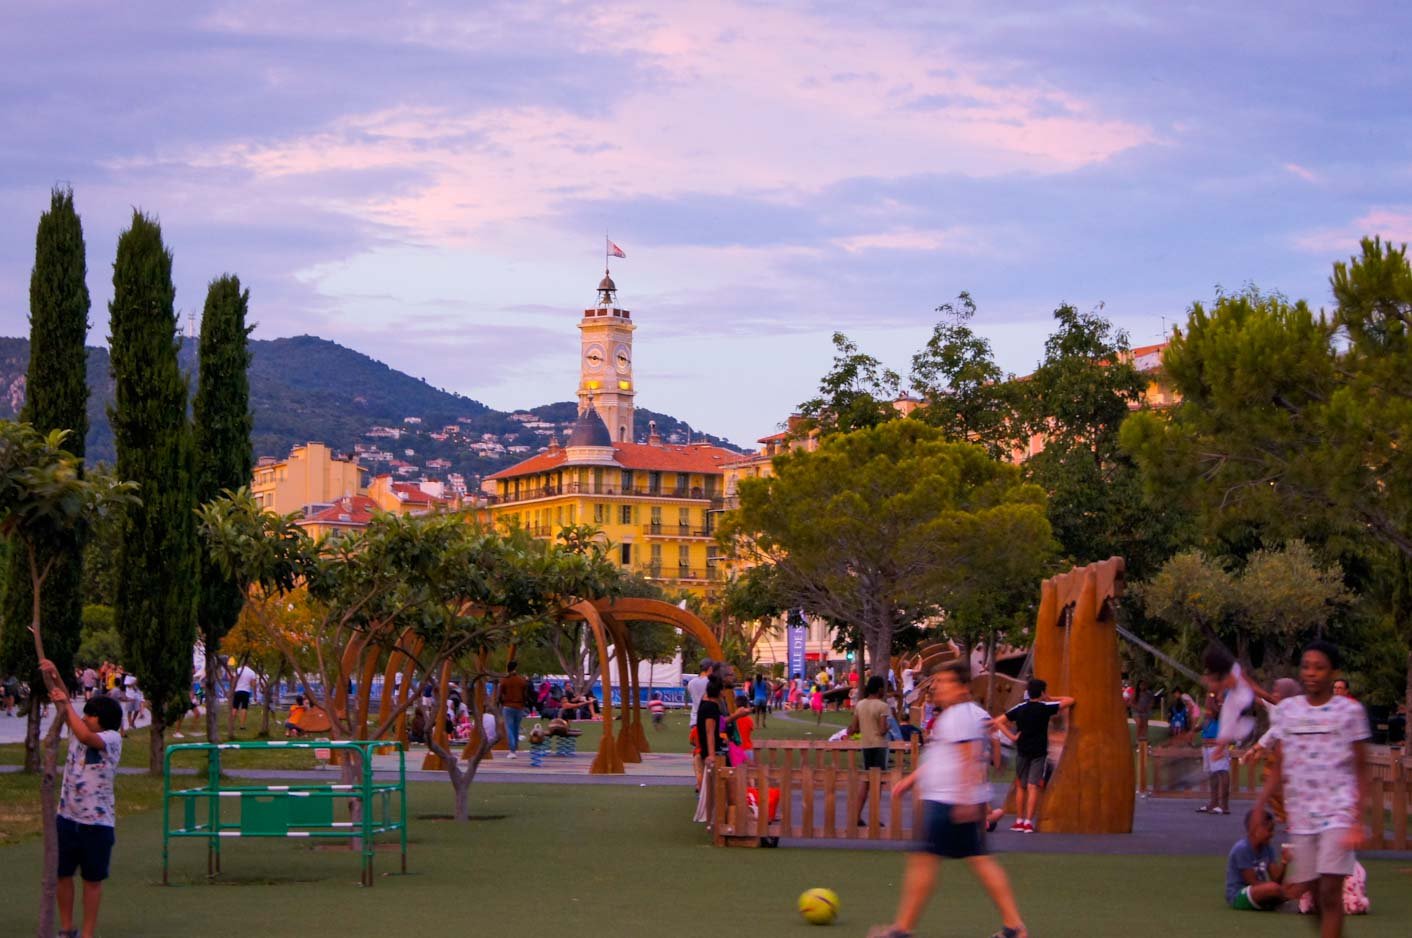 Dieser Spielplatz ist ideal für einen Urlaub in Nizza mit Kindern